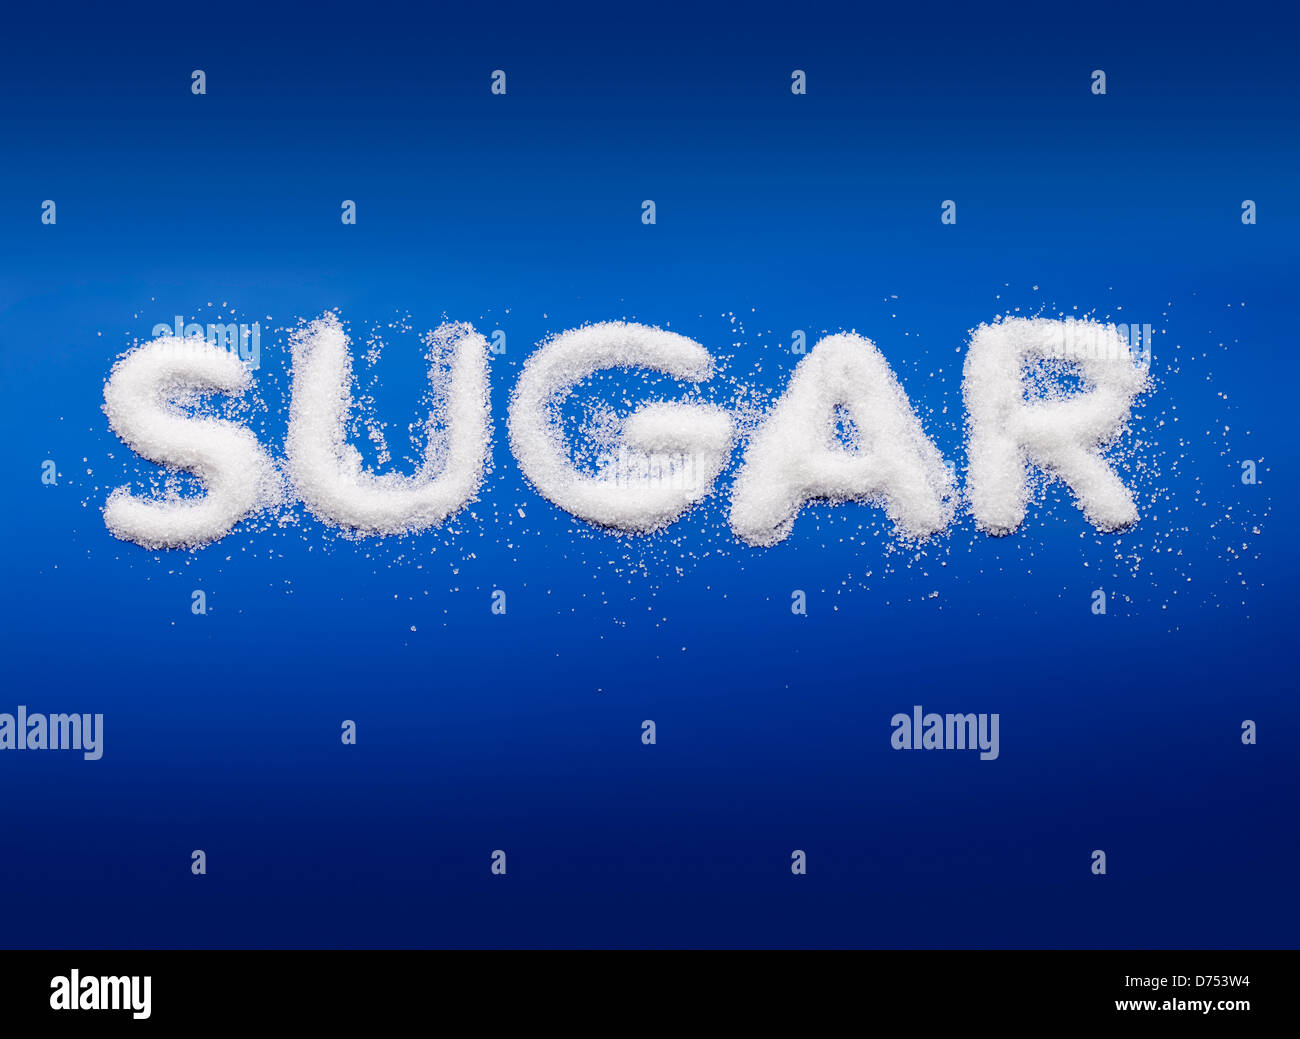 Wort-Zucker mit wirklich feinen Kristallzucker auf blauem Hintergrund geschrieben. Stockfoto